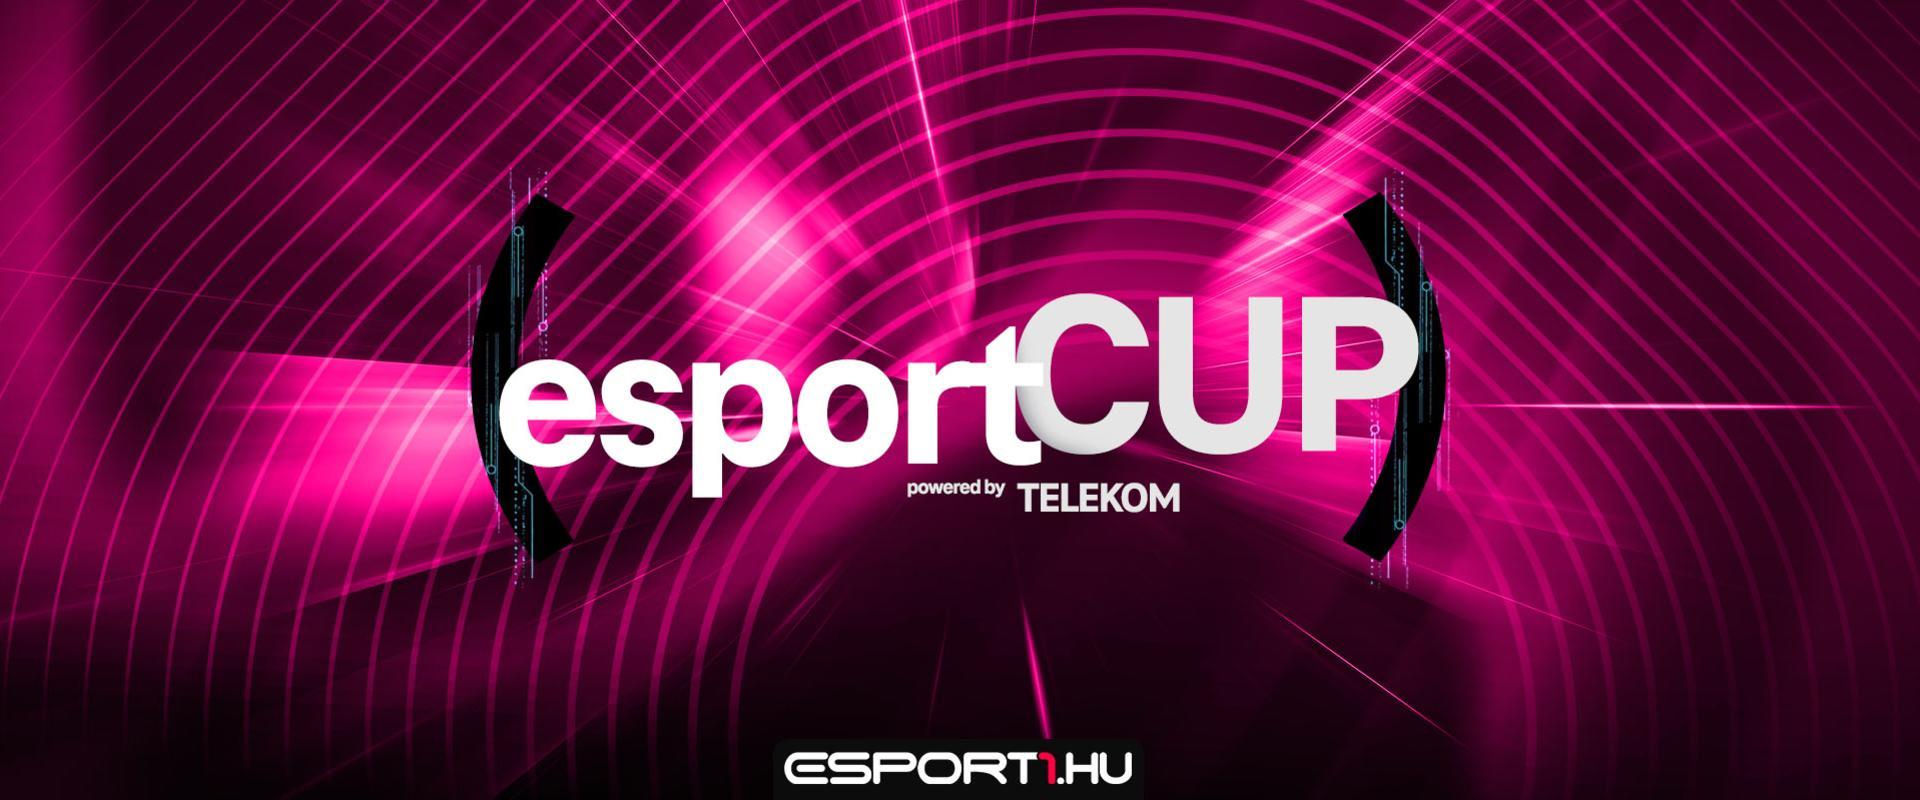 Végsőkig tartó küzdelmek és óriási csaták - így zajlott az Esport CUP powered by Telekom